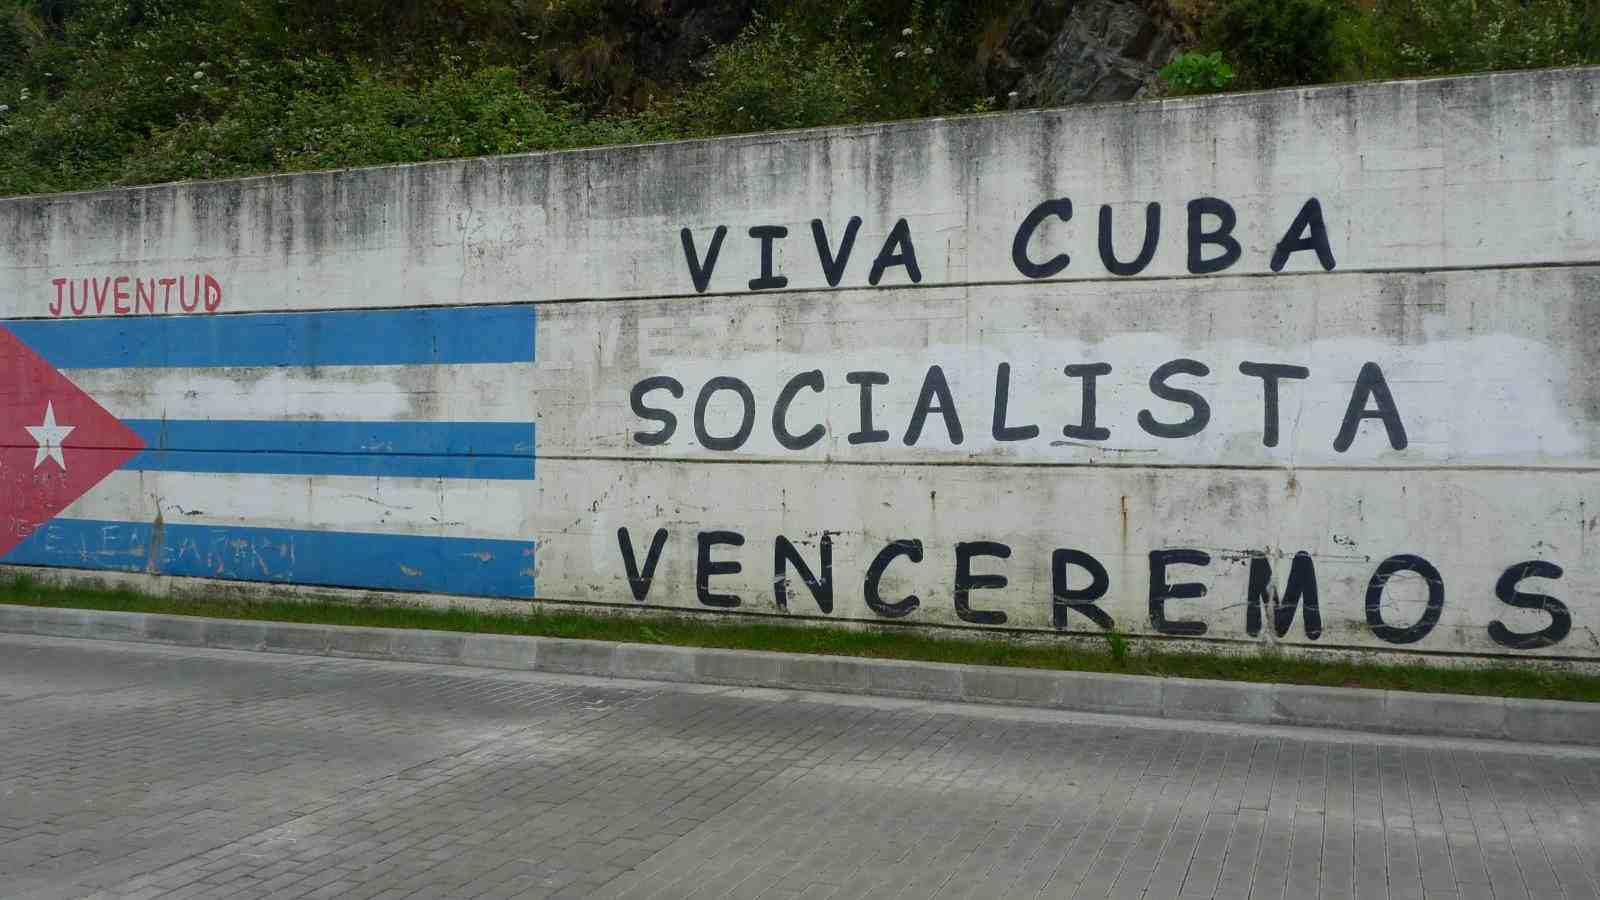 Malgré le blocus des Etats-Unis, l'économie redémarre à Cuba